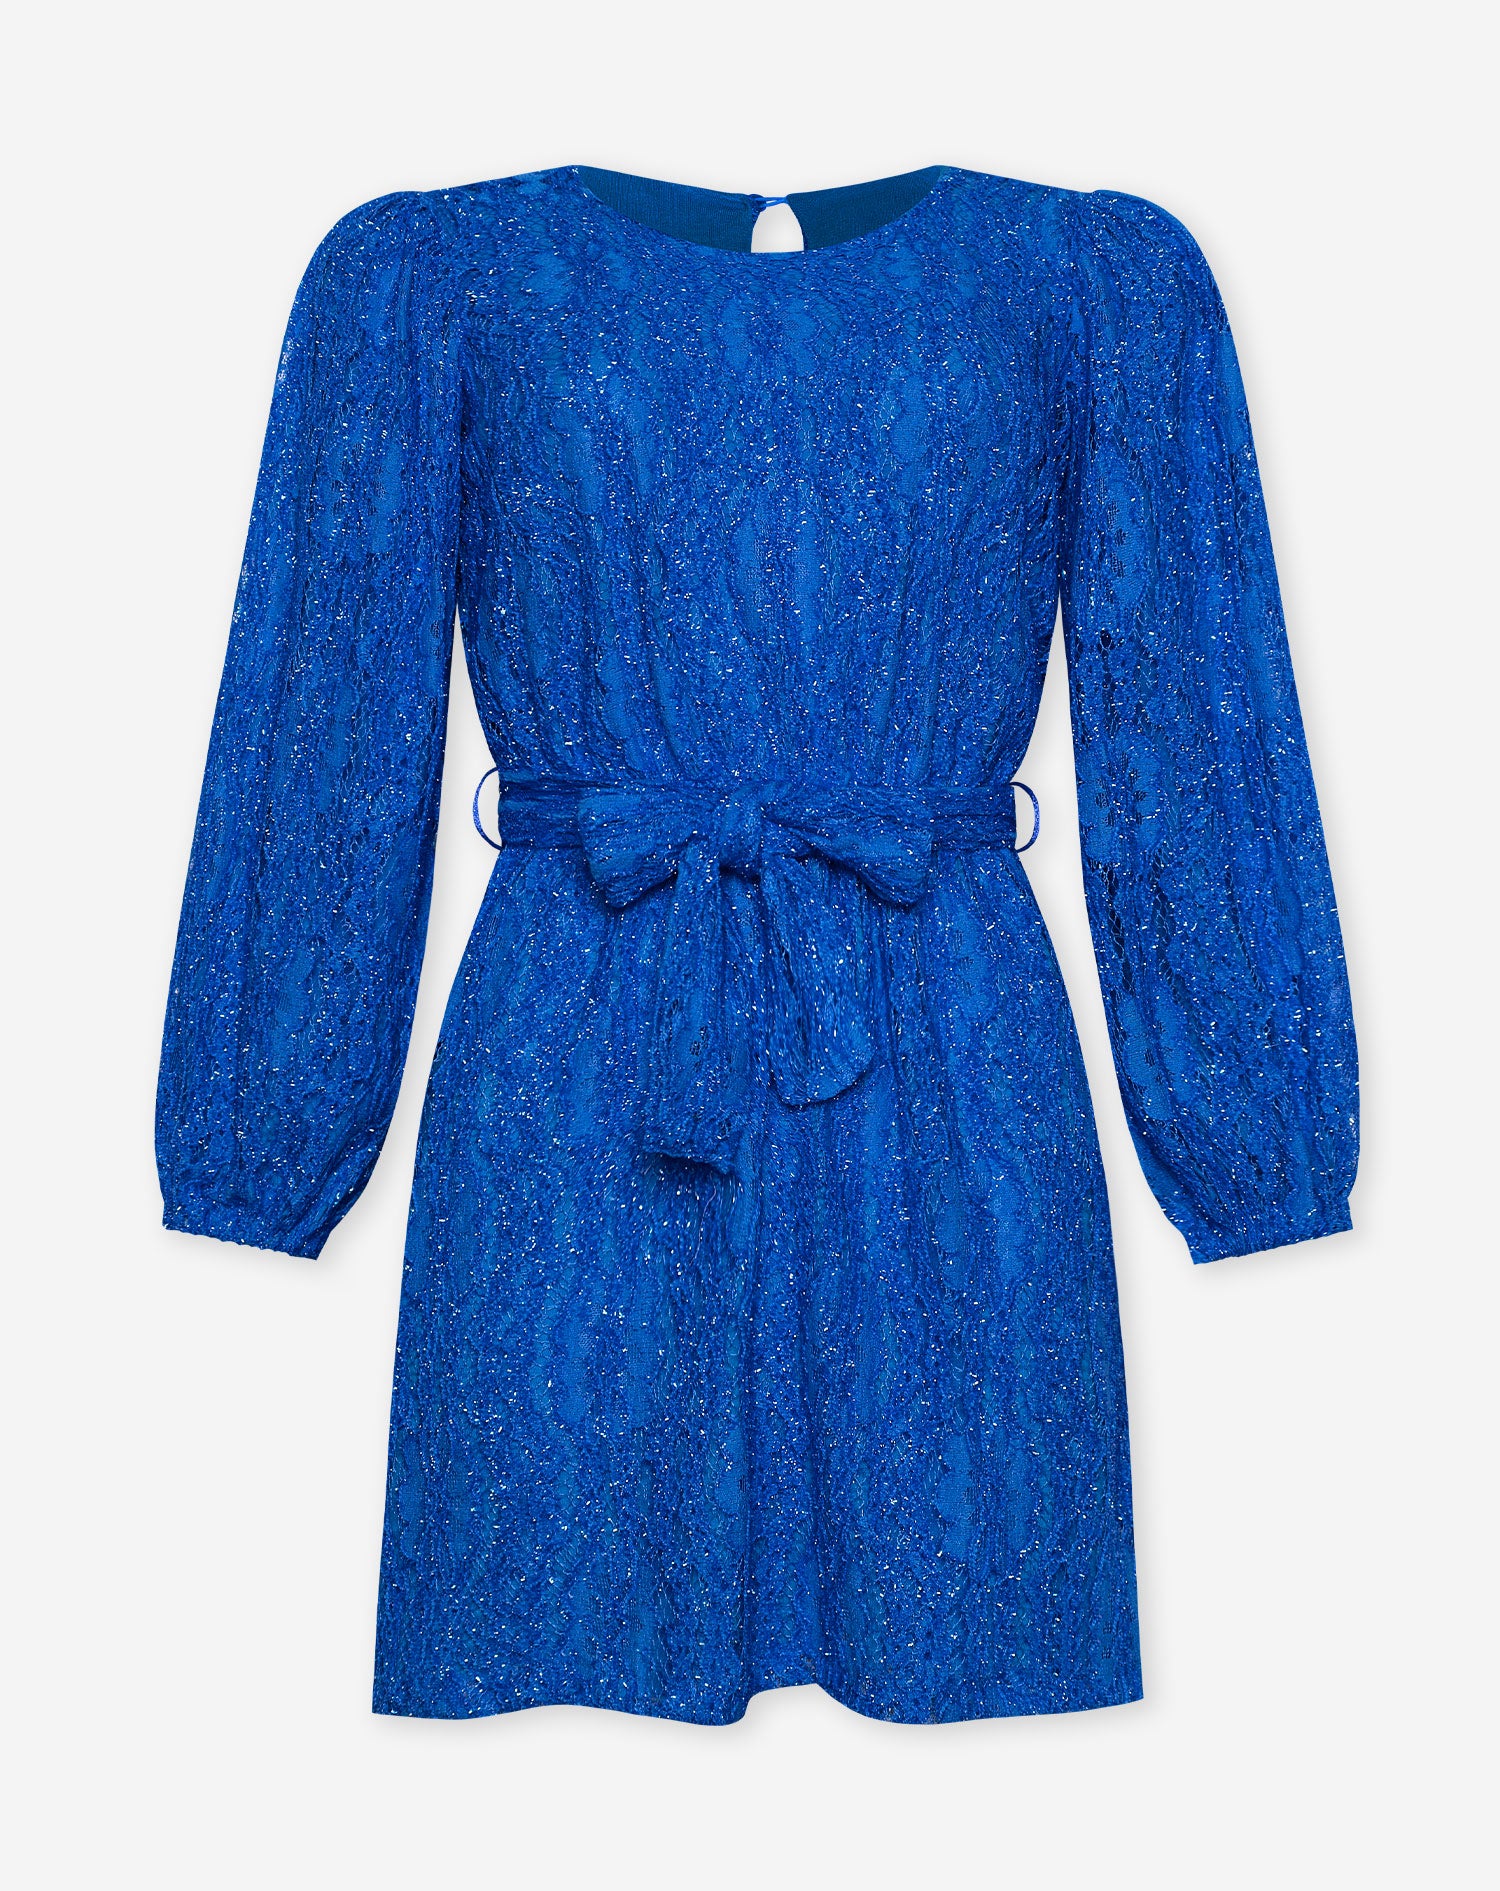 FLORA GLITTER DRESS ROYAL BLUE